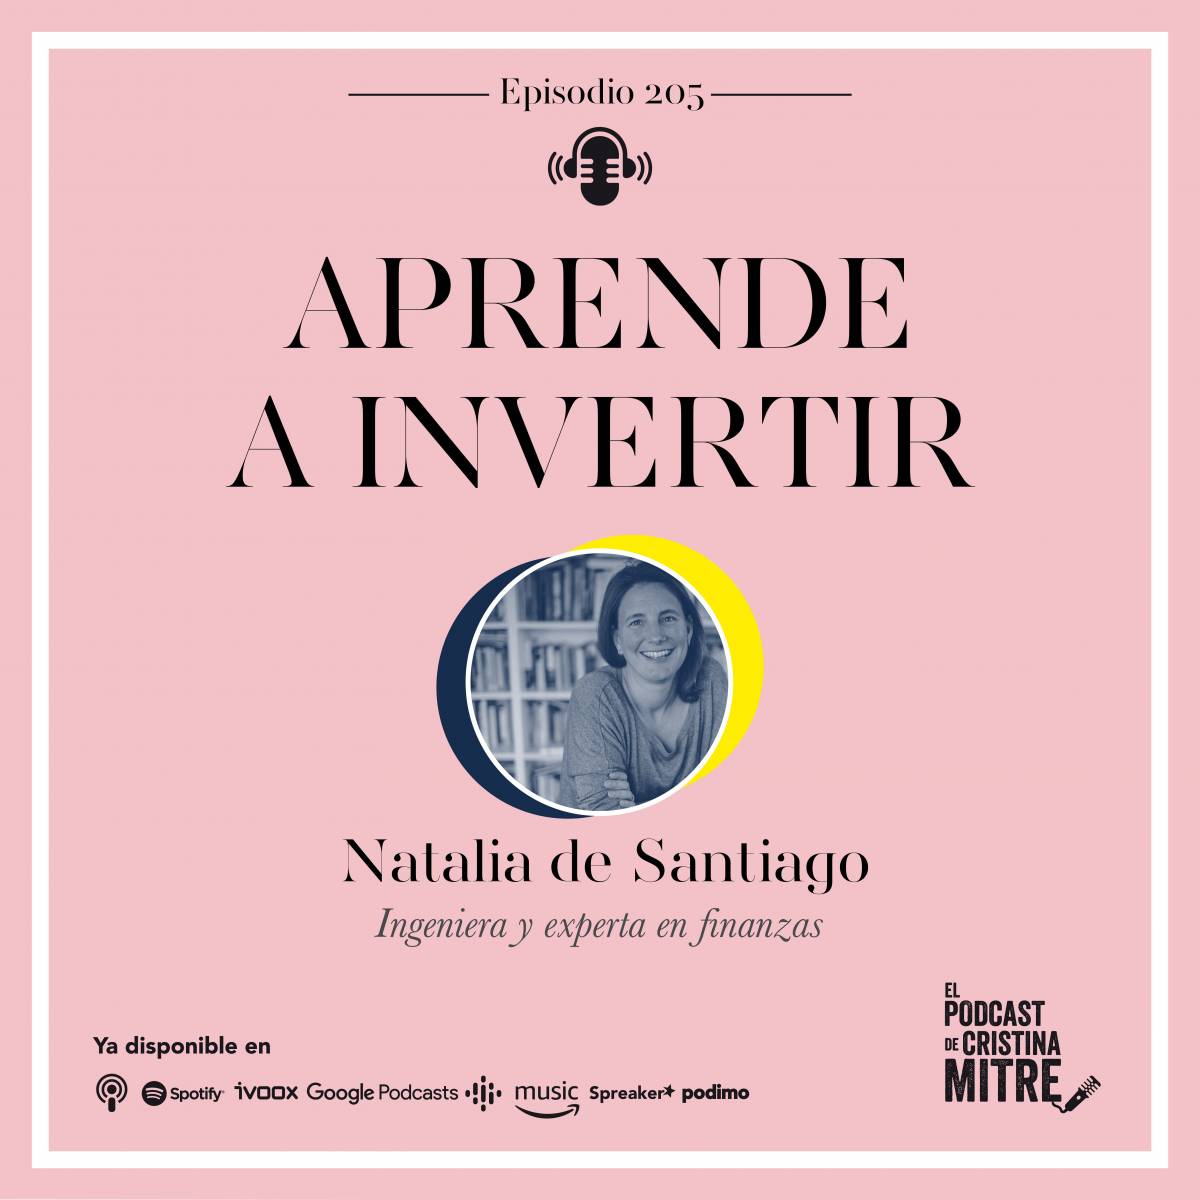 Podcast Cristina Mitre Natalia de Santiago Invertir